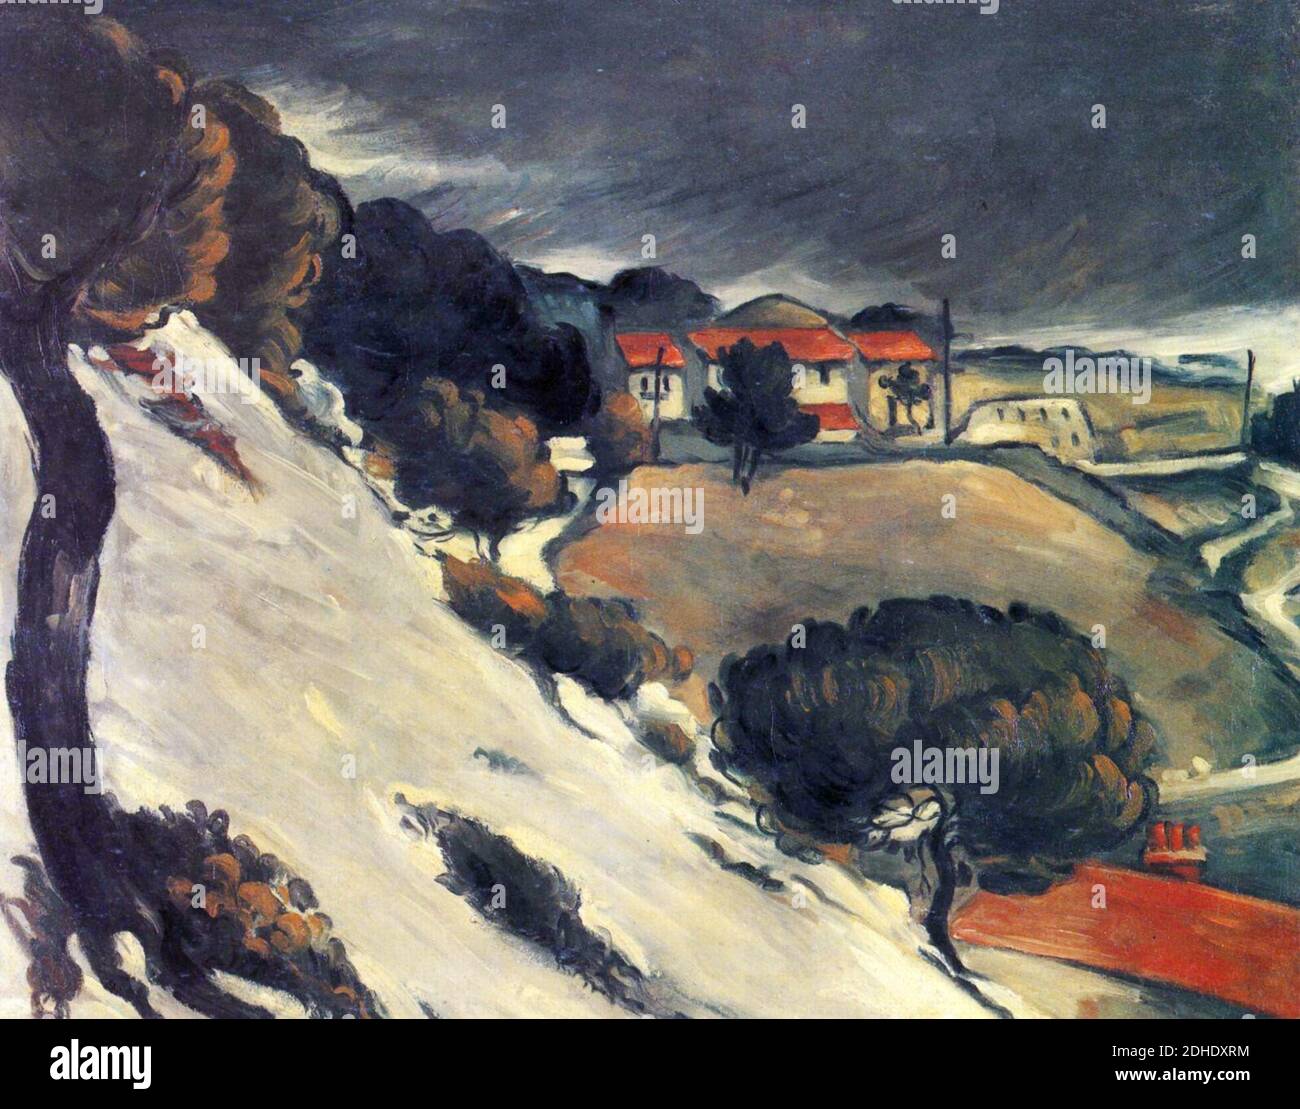 L'Estaque, neige fondante, par Paul Cézanne. Stockfoto